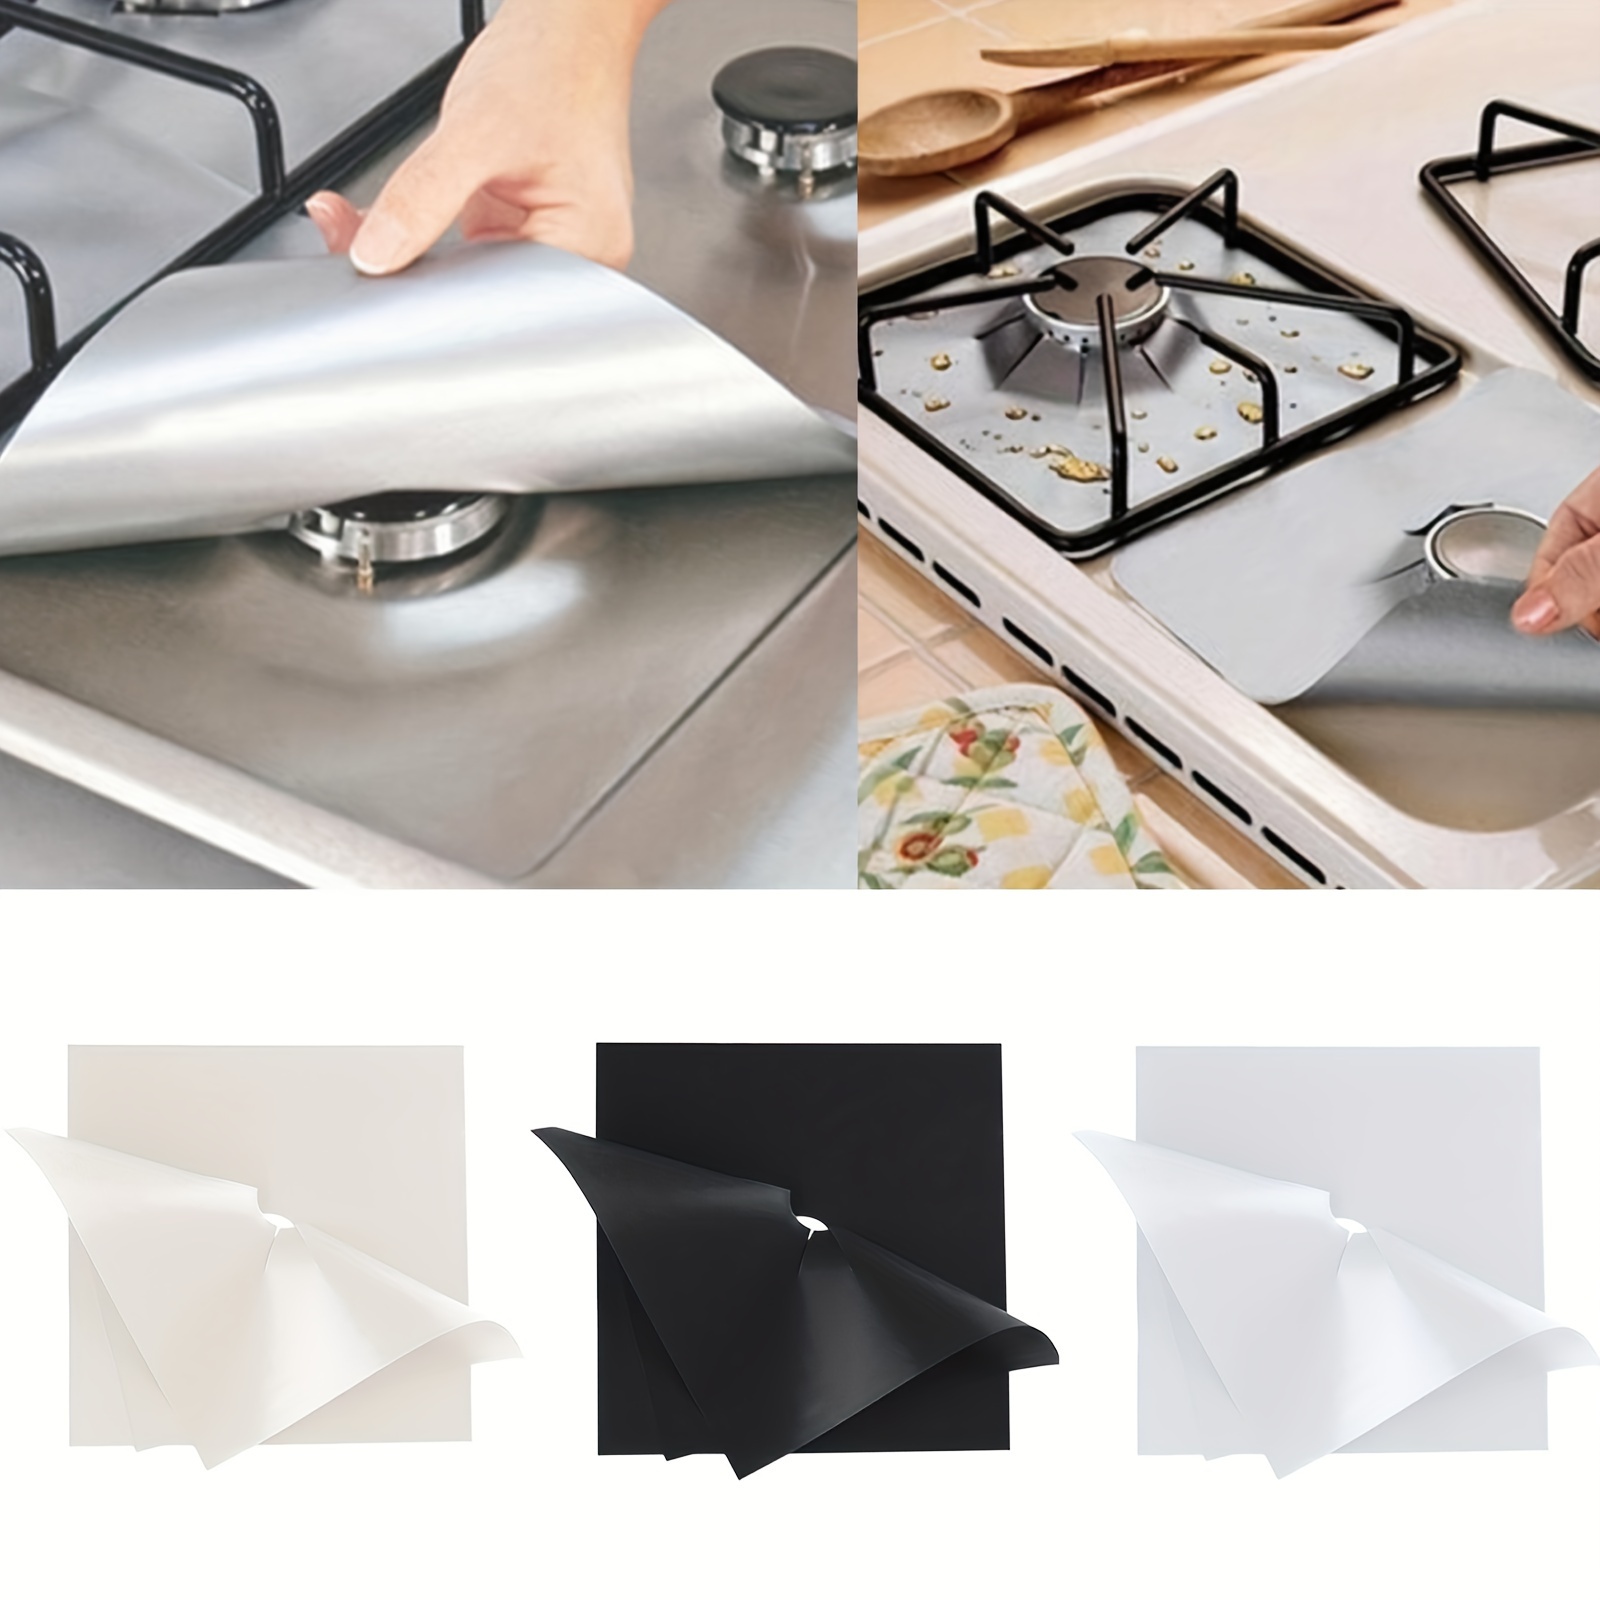 6pcs Premium Extra 015mm spessore riutilizzabile gamma di gas piano cottura  bruciatore protezione pad coperchio per la pulizia degli utensili da cucina